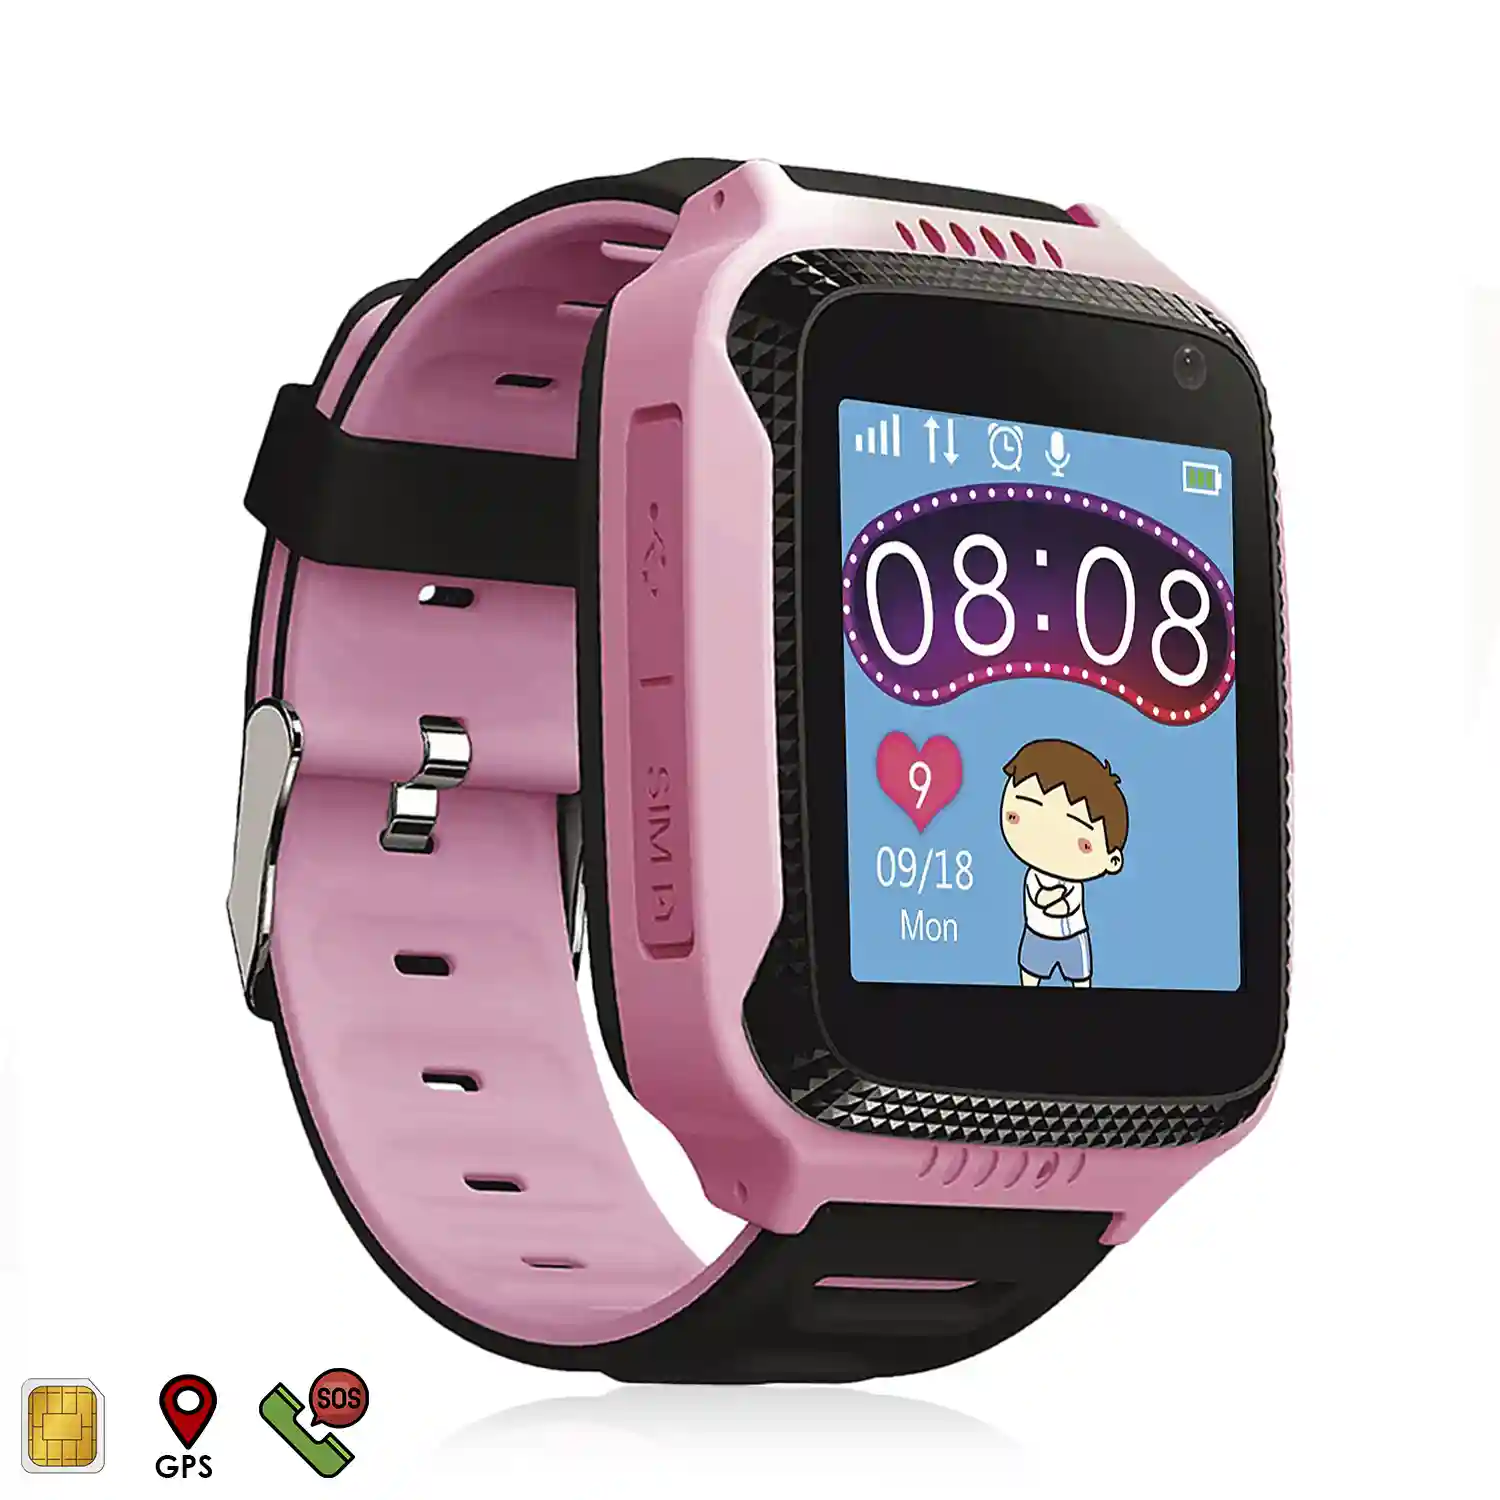 Smartwatch GPS especial para niños, con cámara, de rastreo, llamadas y de llamada